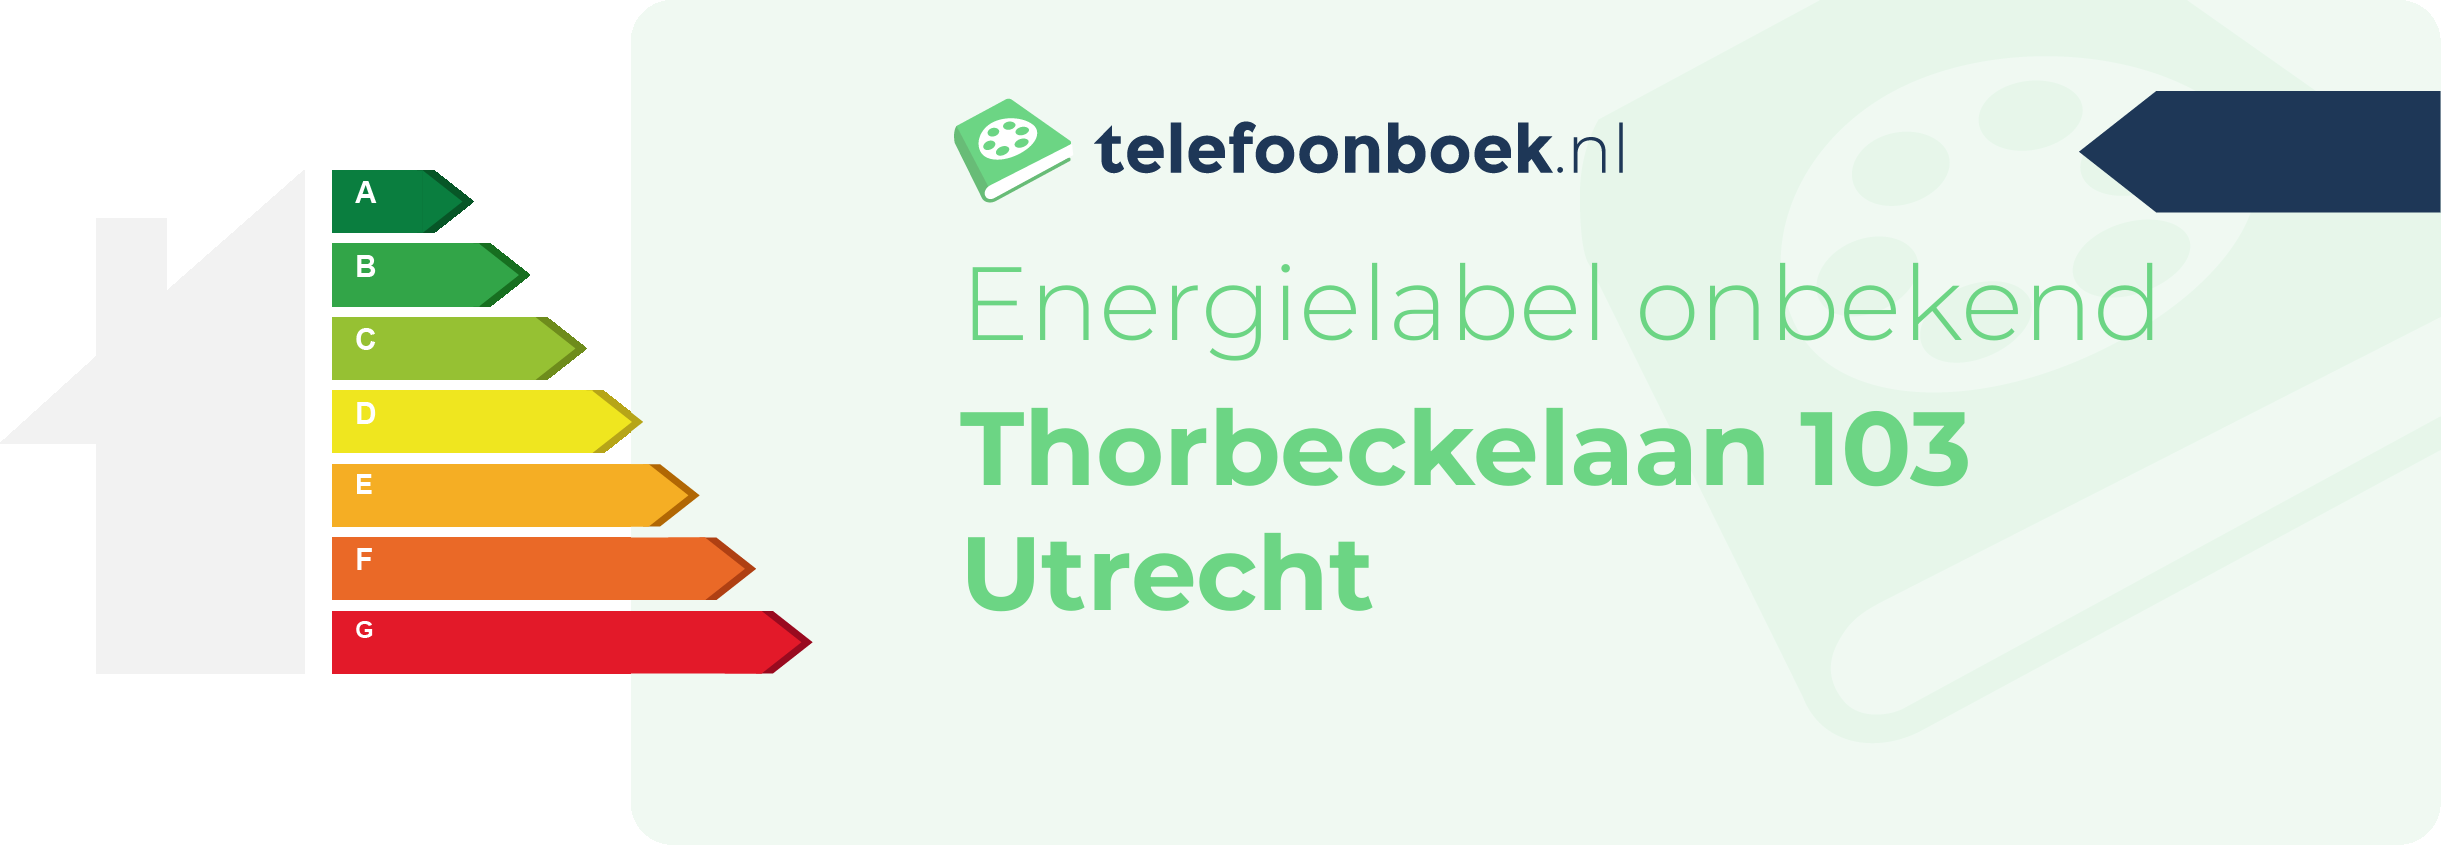 Energielabel Thorbeckelaan 103 Utrecht